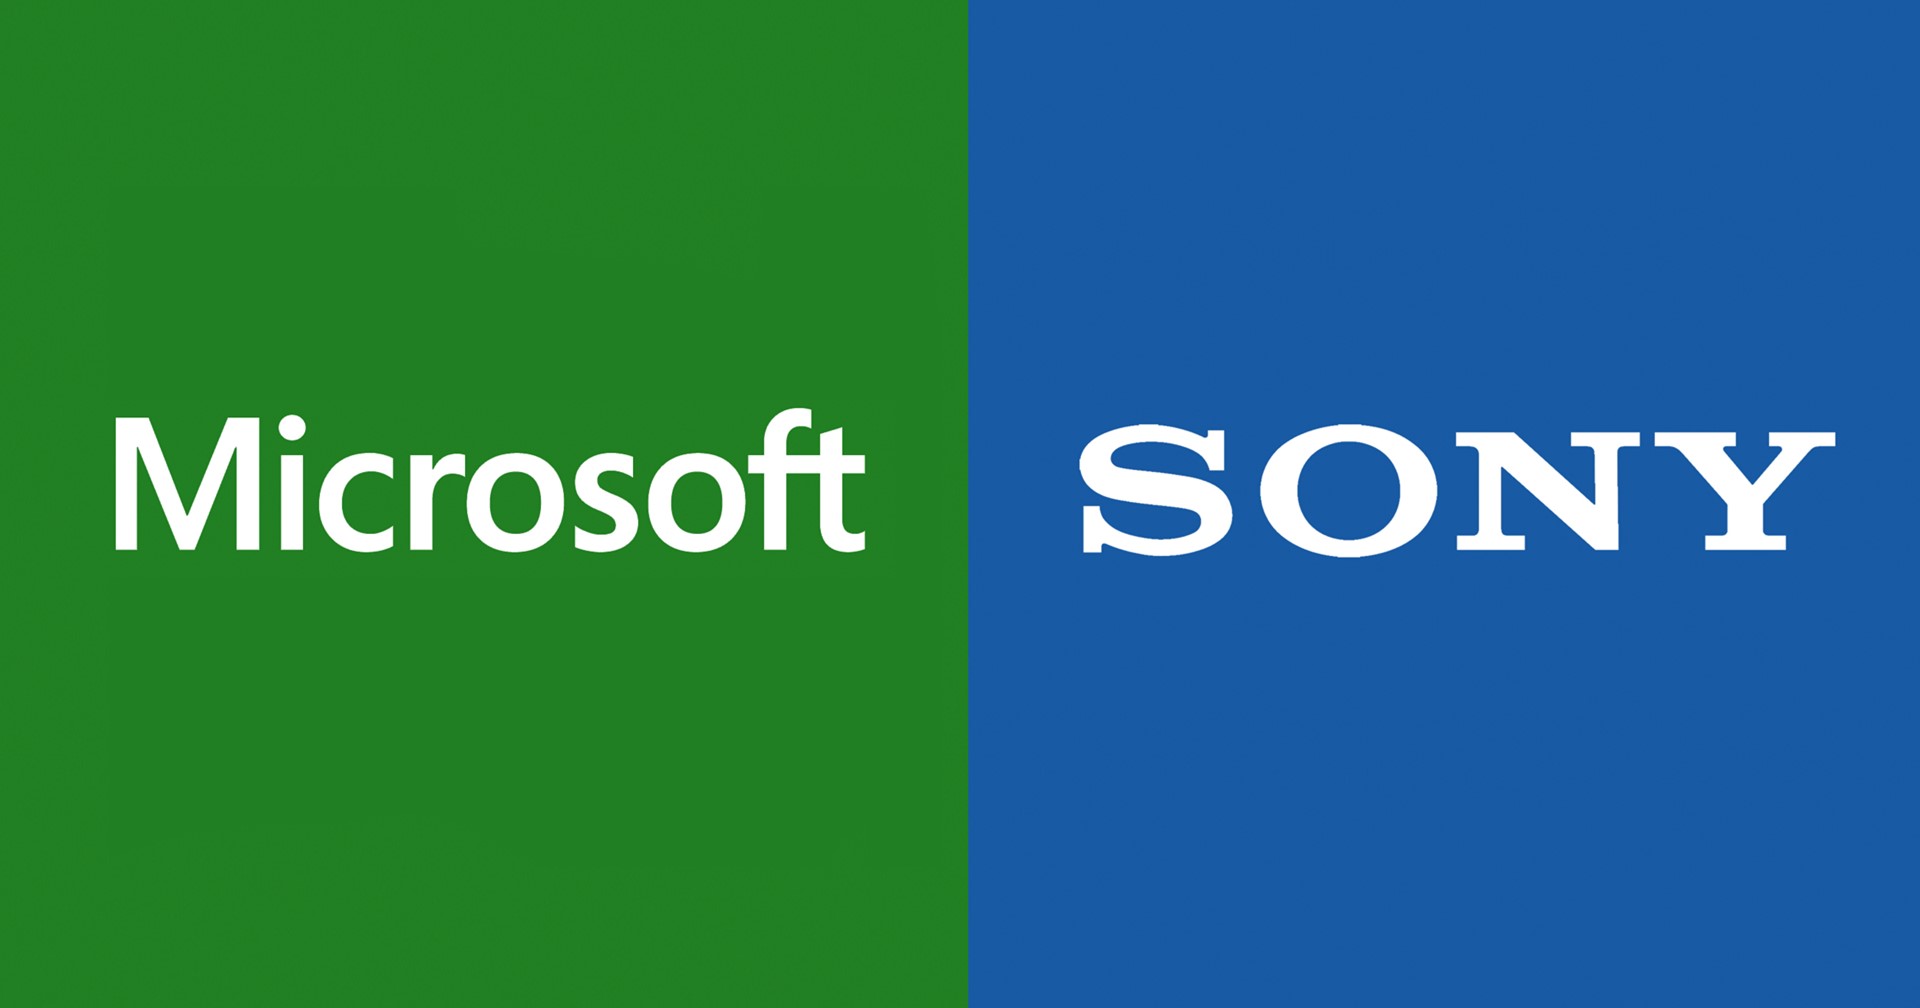 Sony ถูกสั่งให้เปิดเผยความลับทางการค้า เพราะคดี Microsoft